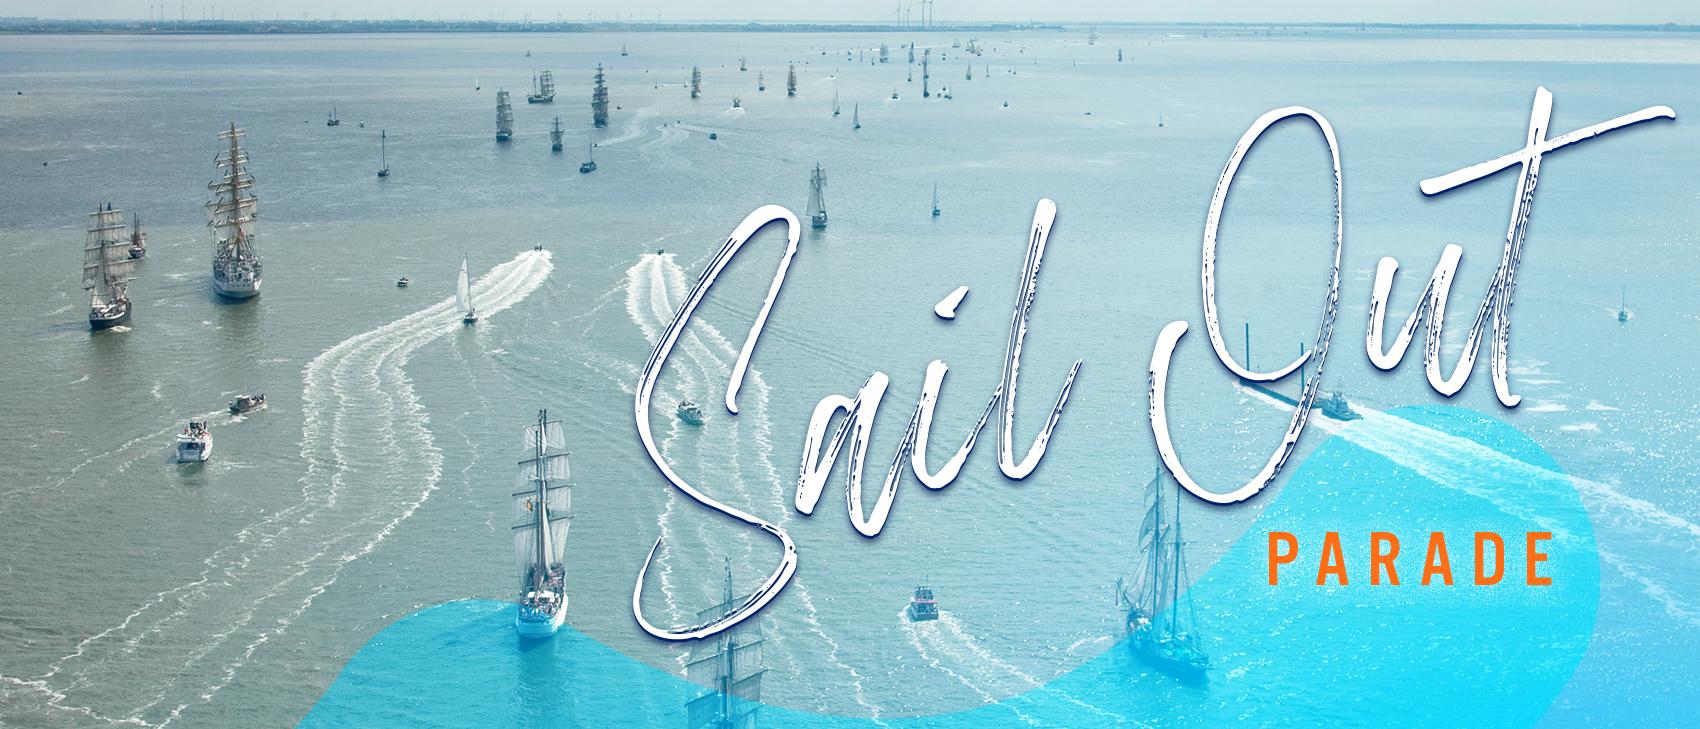 Sail Out Parade